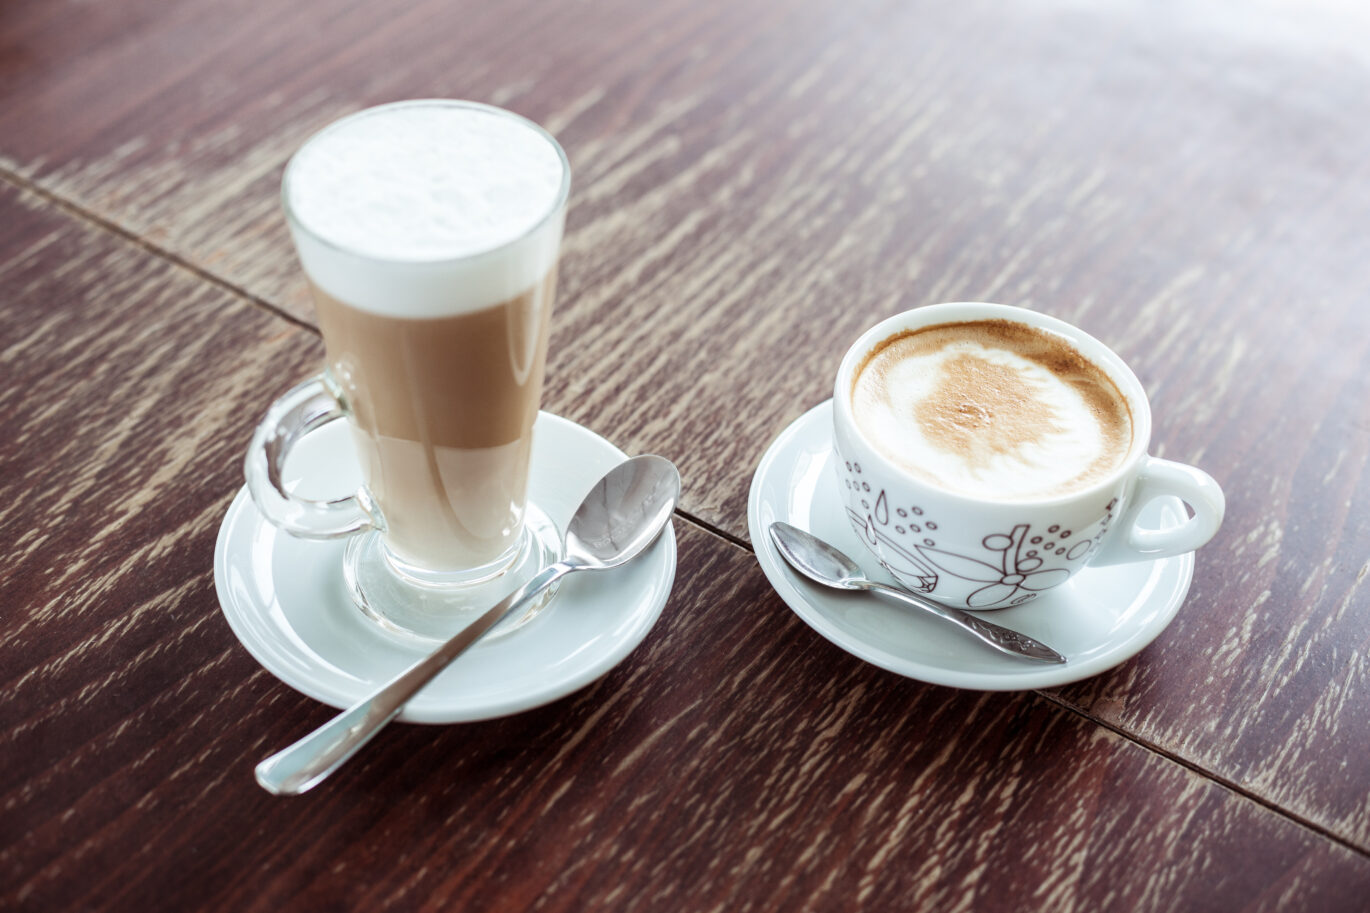 Kopje latte macchiato en een kopje cappuccino op een houten tafel. Maar wat is het verschil tussen latte macchiato en cappuccino?